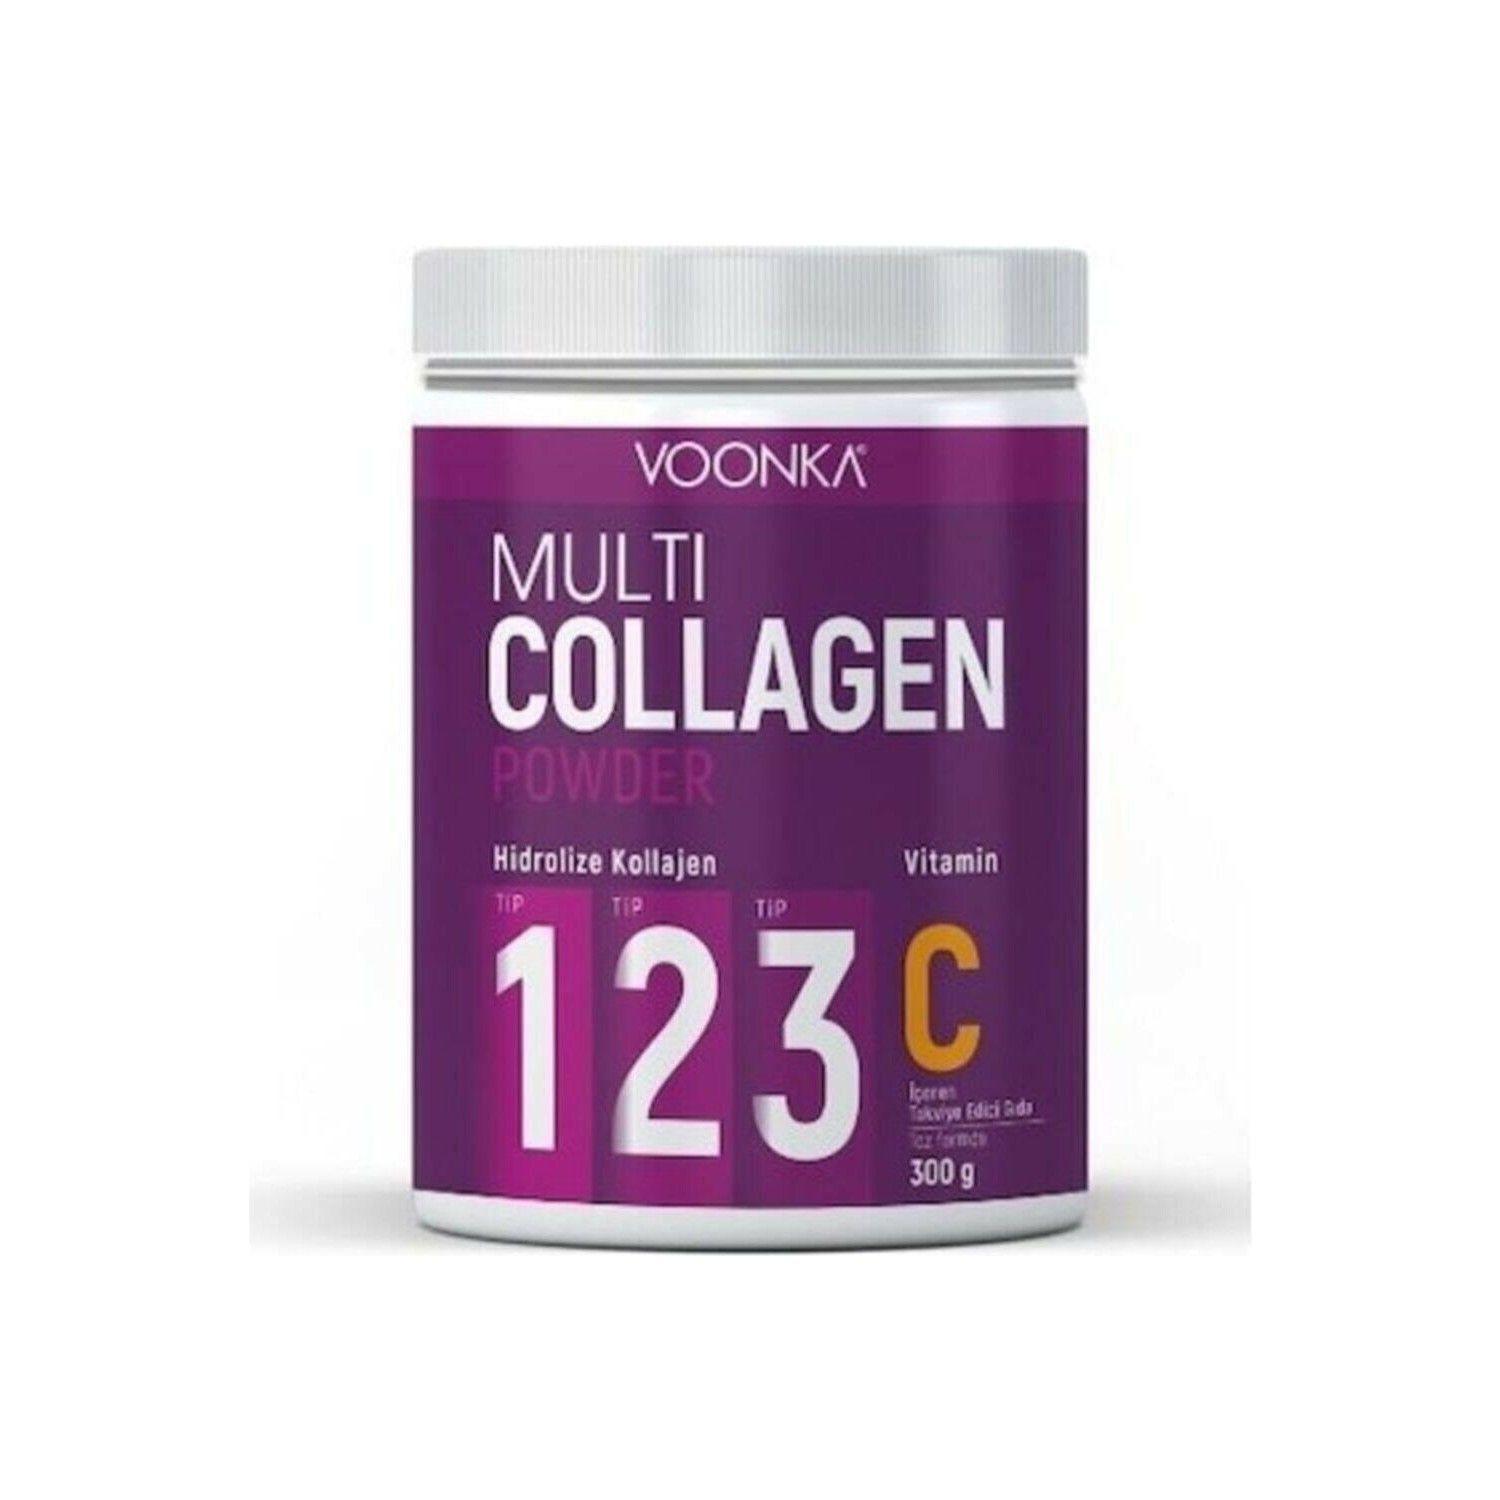 Voonka Multi Collagen Powder İnceleme